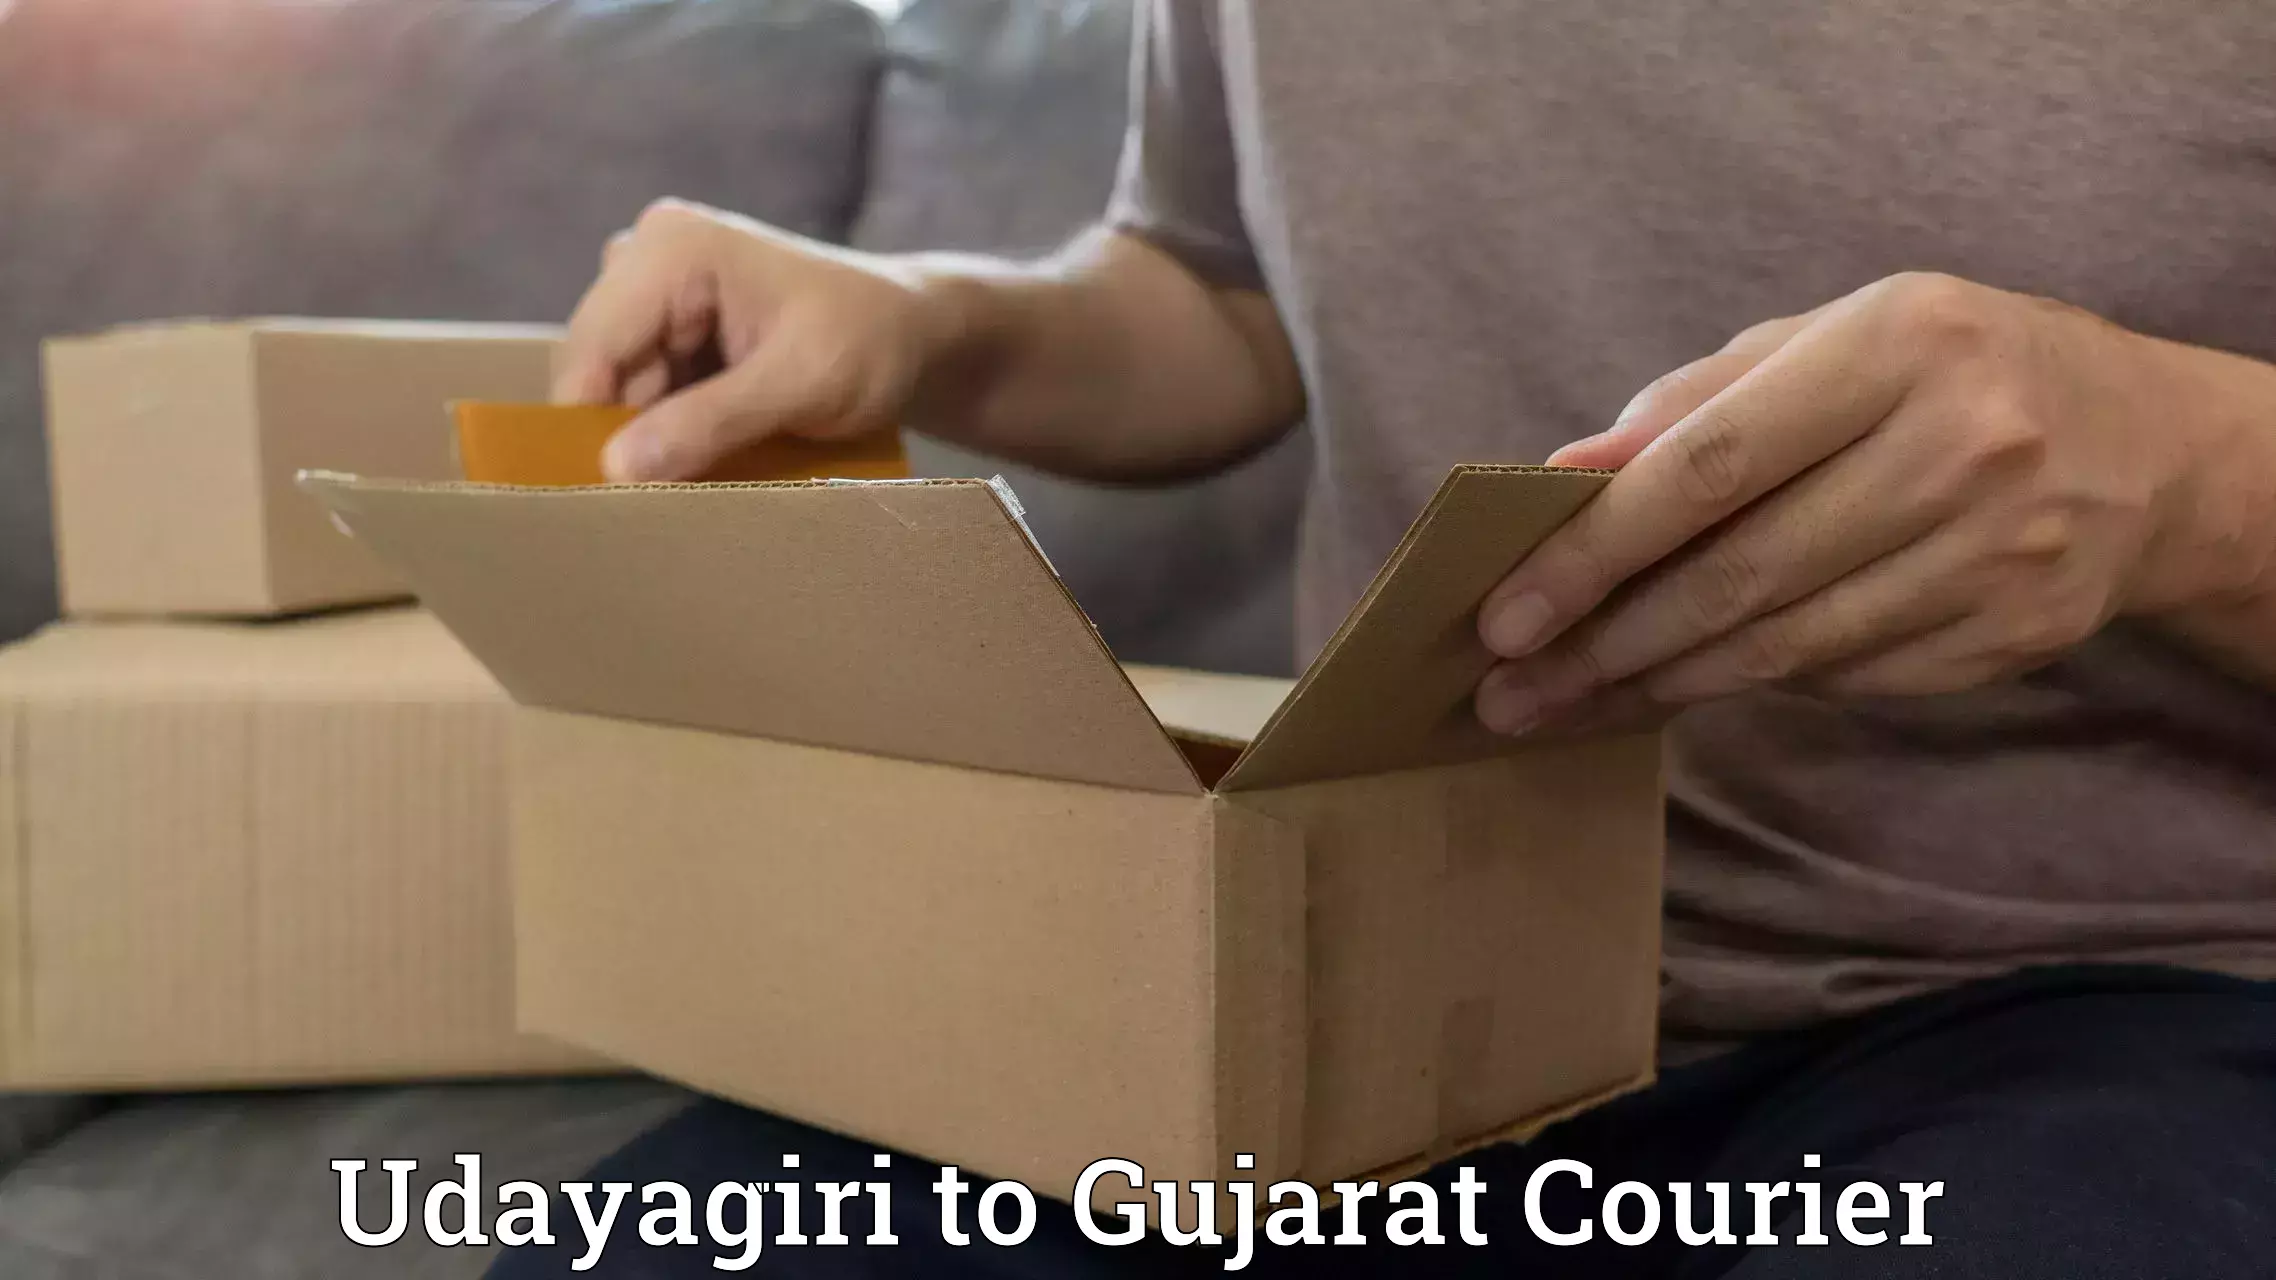 24-hour delivery options Udayagiri to Matar